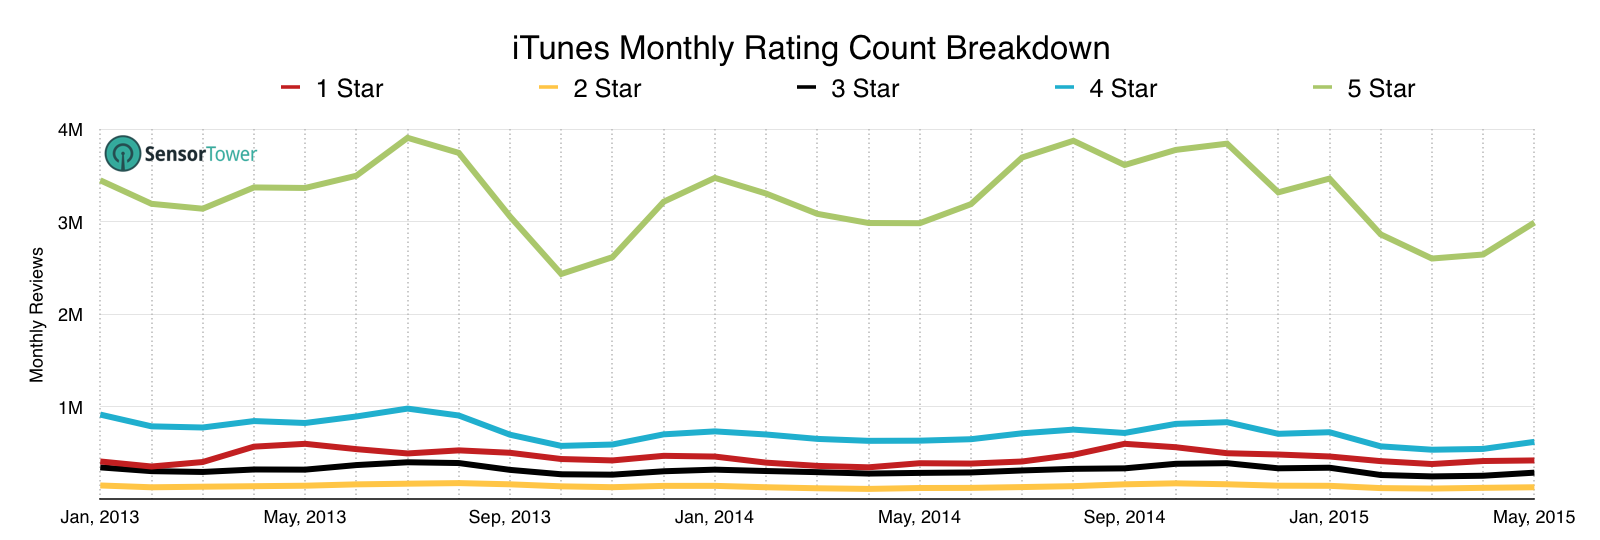 lt="iOS Star Count Breakdown